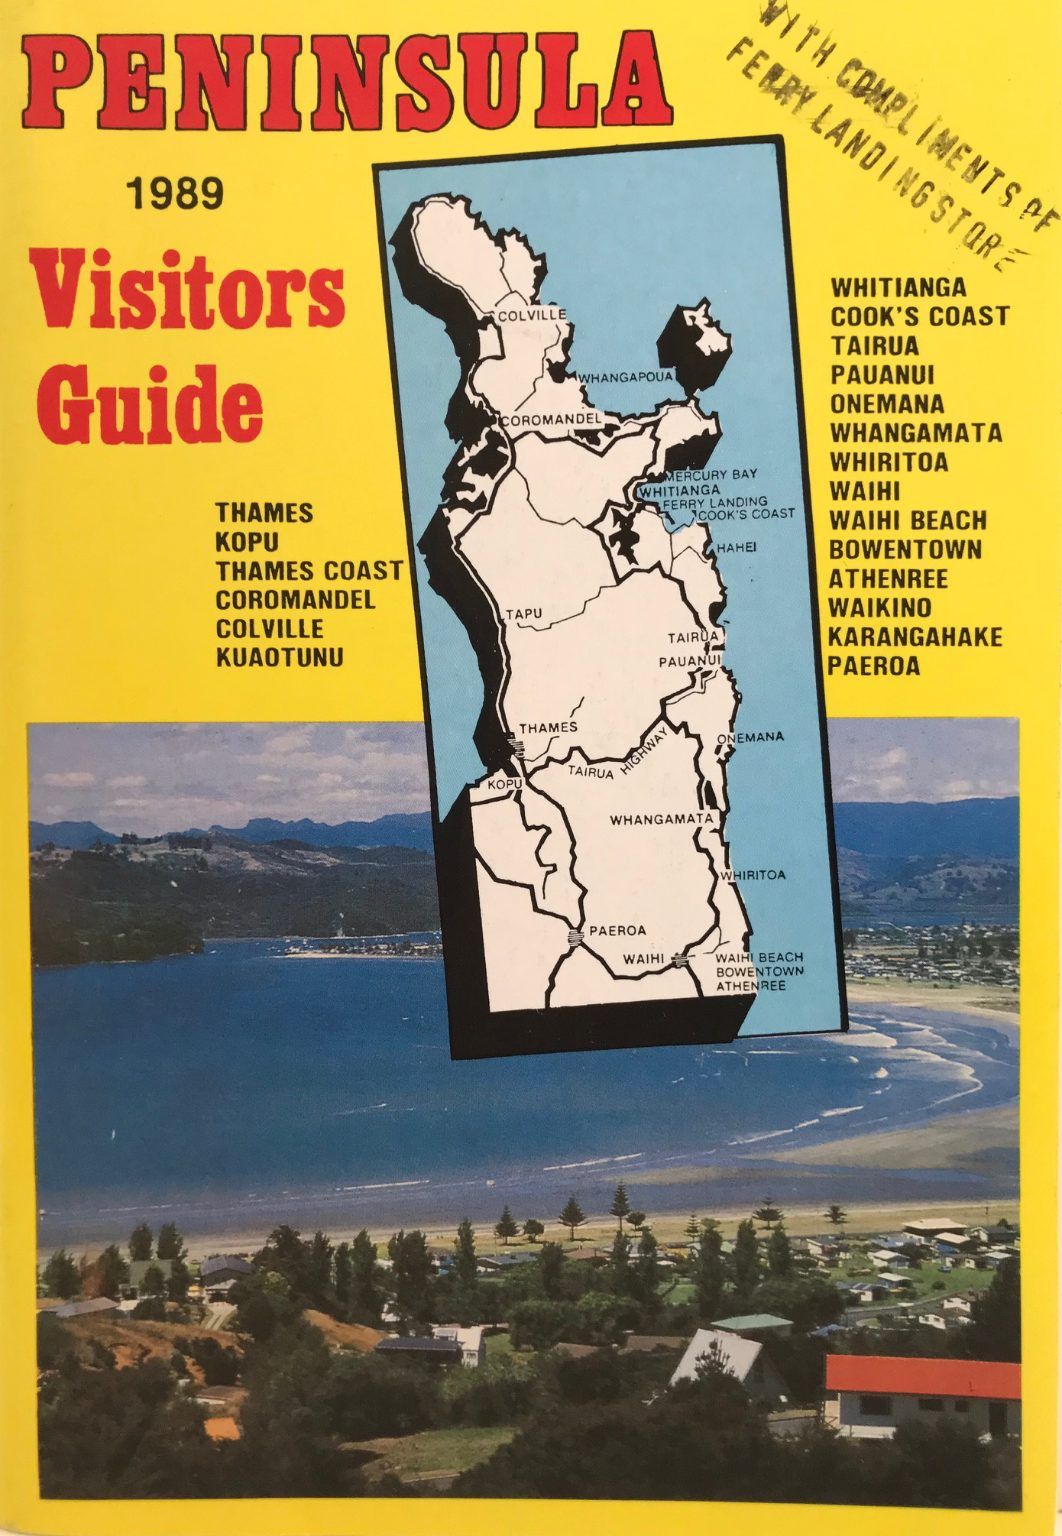 COROMANDEL PENINSULA: Visitors Guide 1989